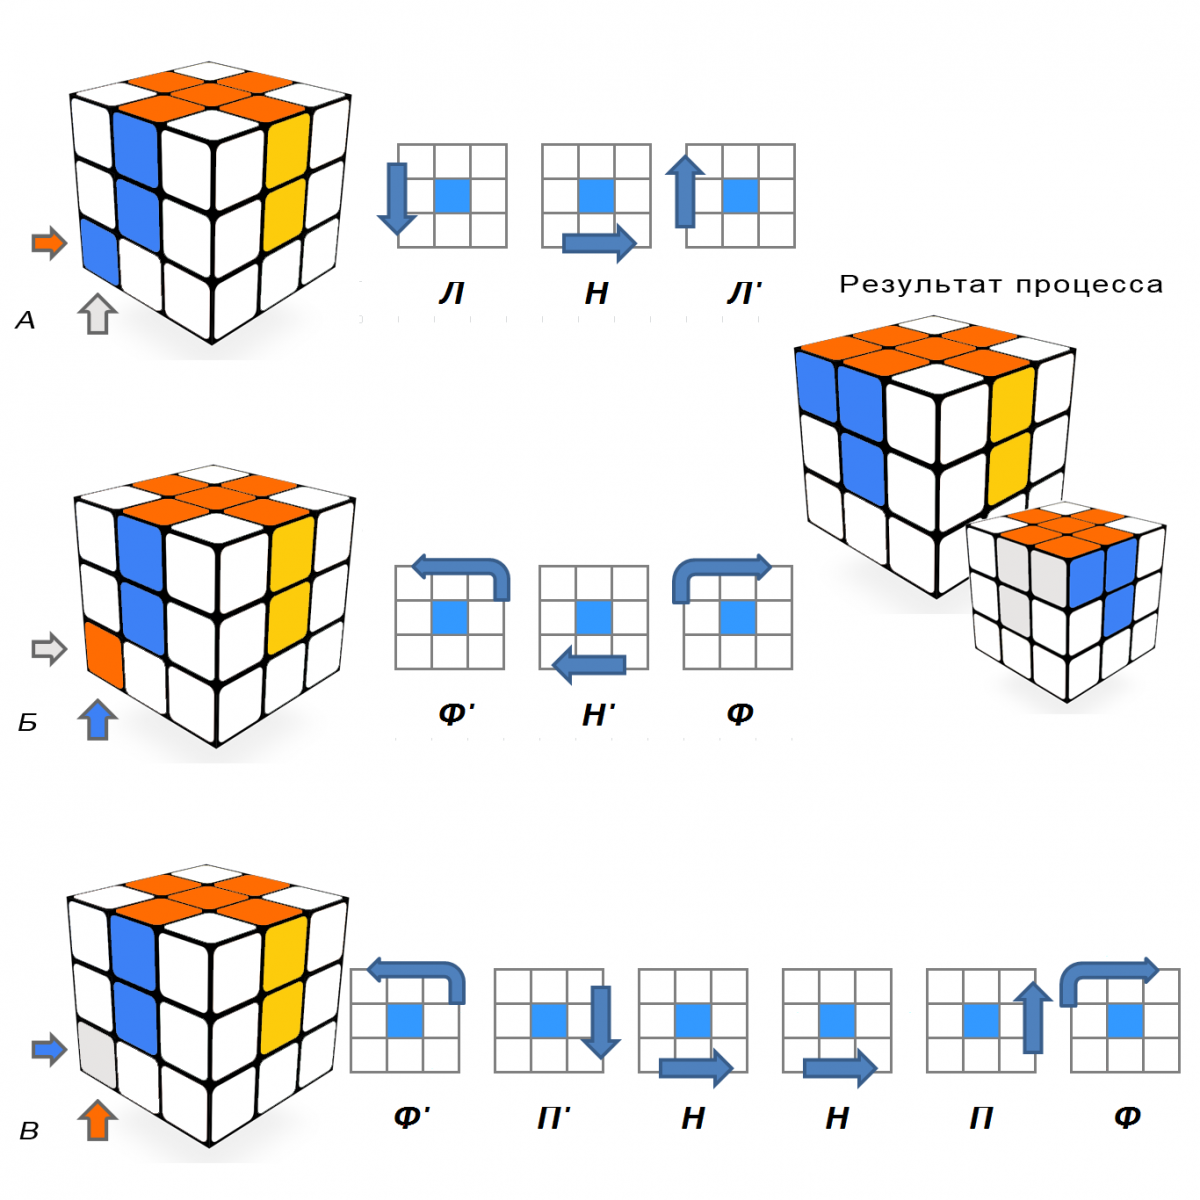 Сборка кубика 3 слой. Алгоритм кубика Рубика 3х3. Схема сборки кубика Рубика 3х3. Сборка третьего слоя кубика Рубика 3х3. Как собрать кубик Рубика 3 на 3 схема.